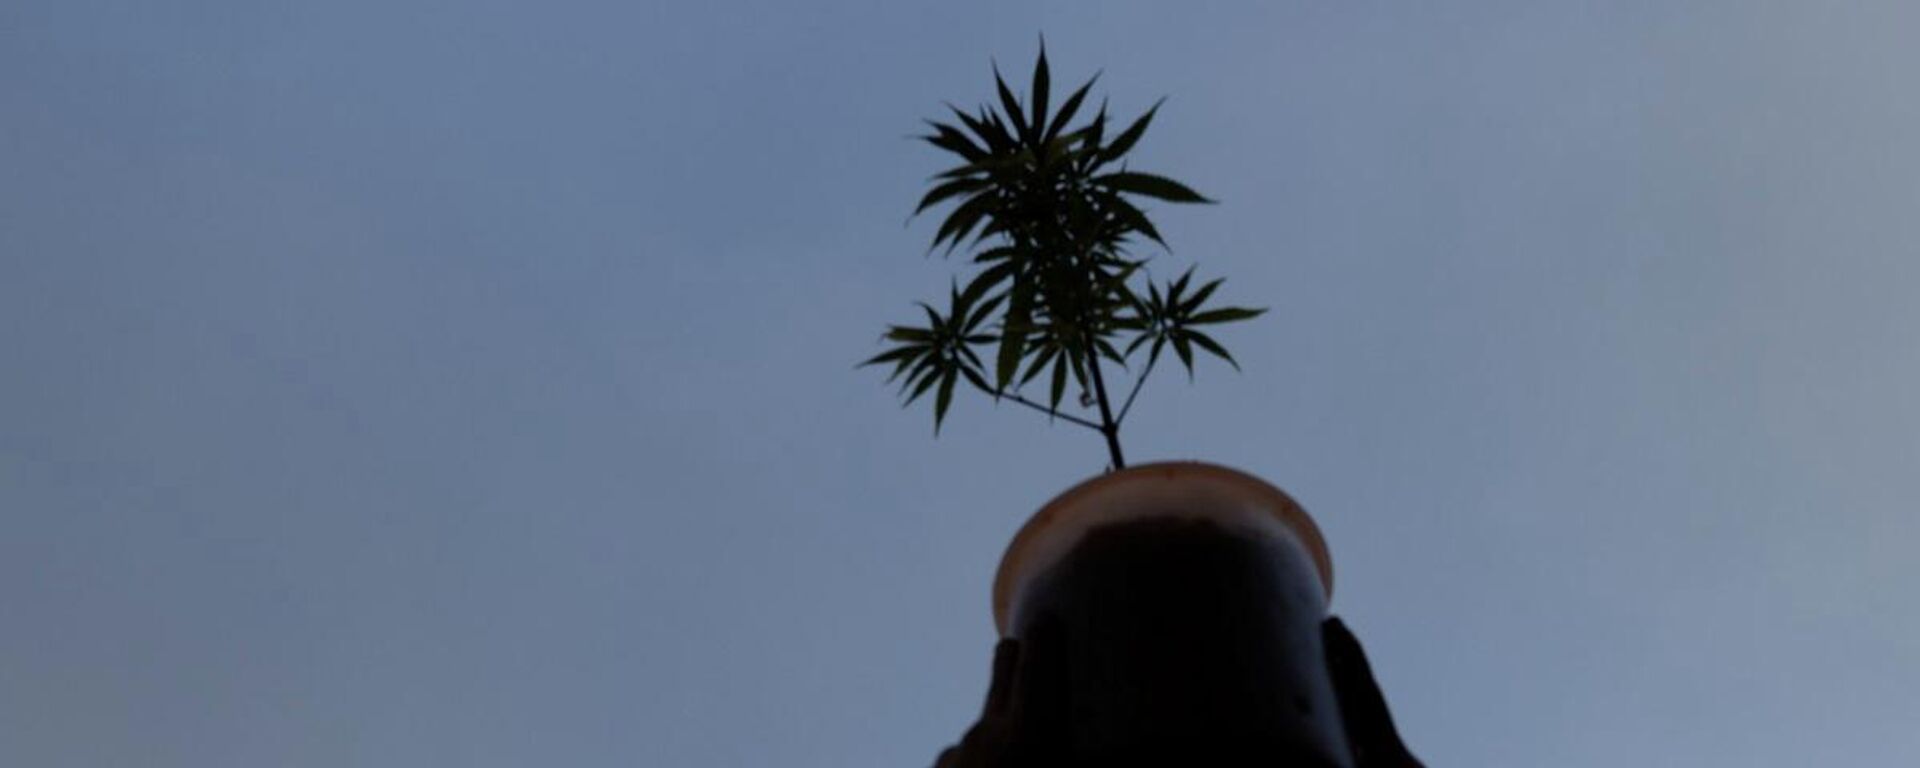 Un activista a favor de la marihuana legalizada sostiene una planta de cannabis durante una marcha en la ciudad de México, el 9 de marzo de 2021. - Sputnik Mundo, 1920, 10.03.2021